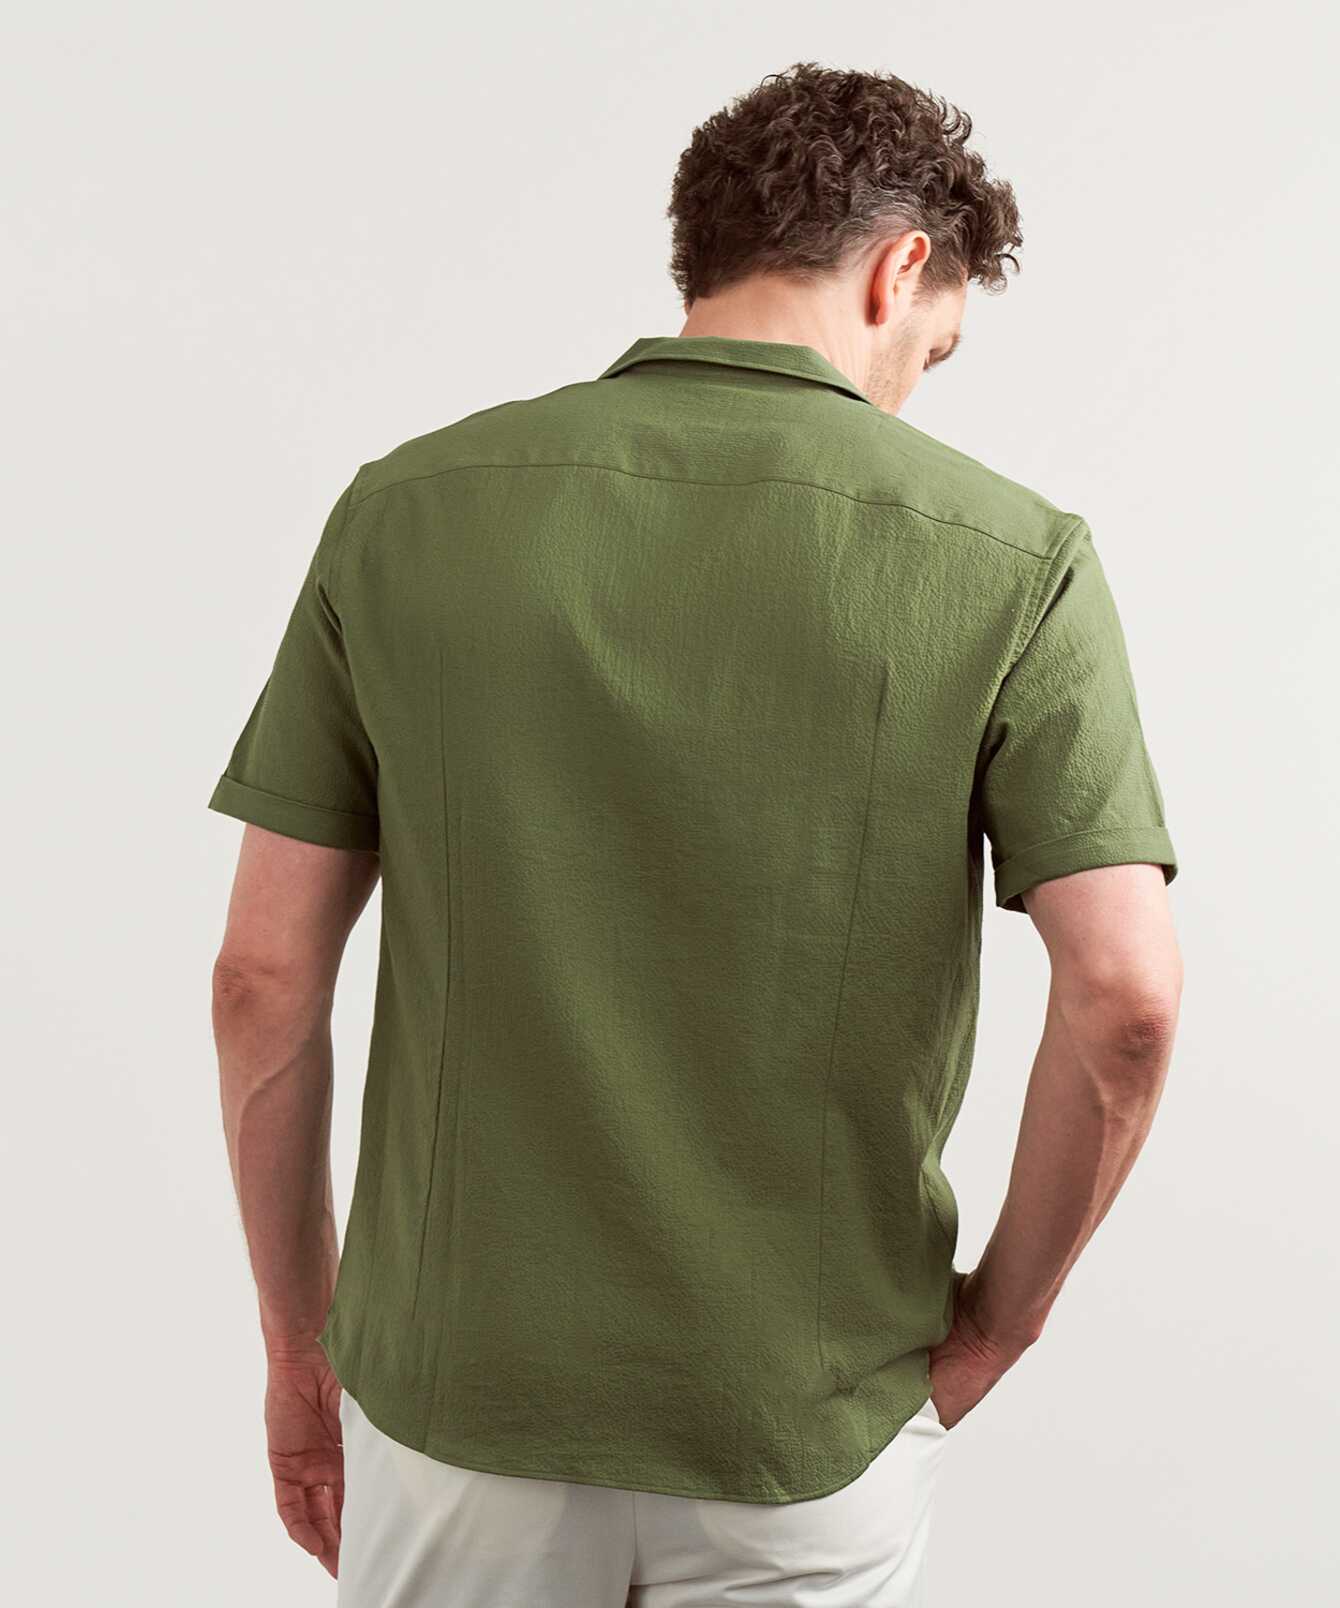 Shirt Belize Green Short Sleeve Seersucker Shirt The Shirt Factory